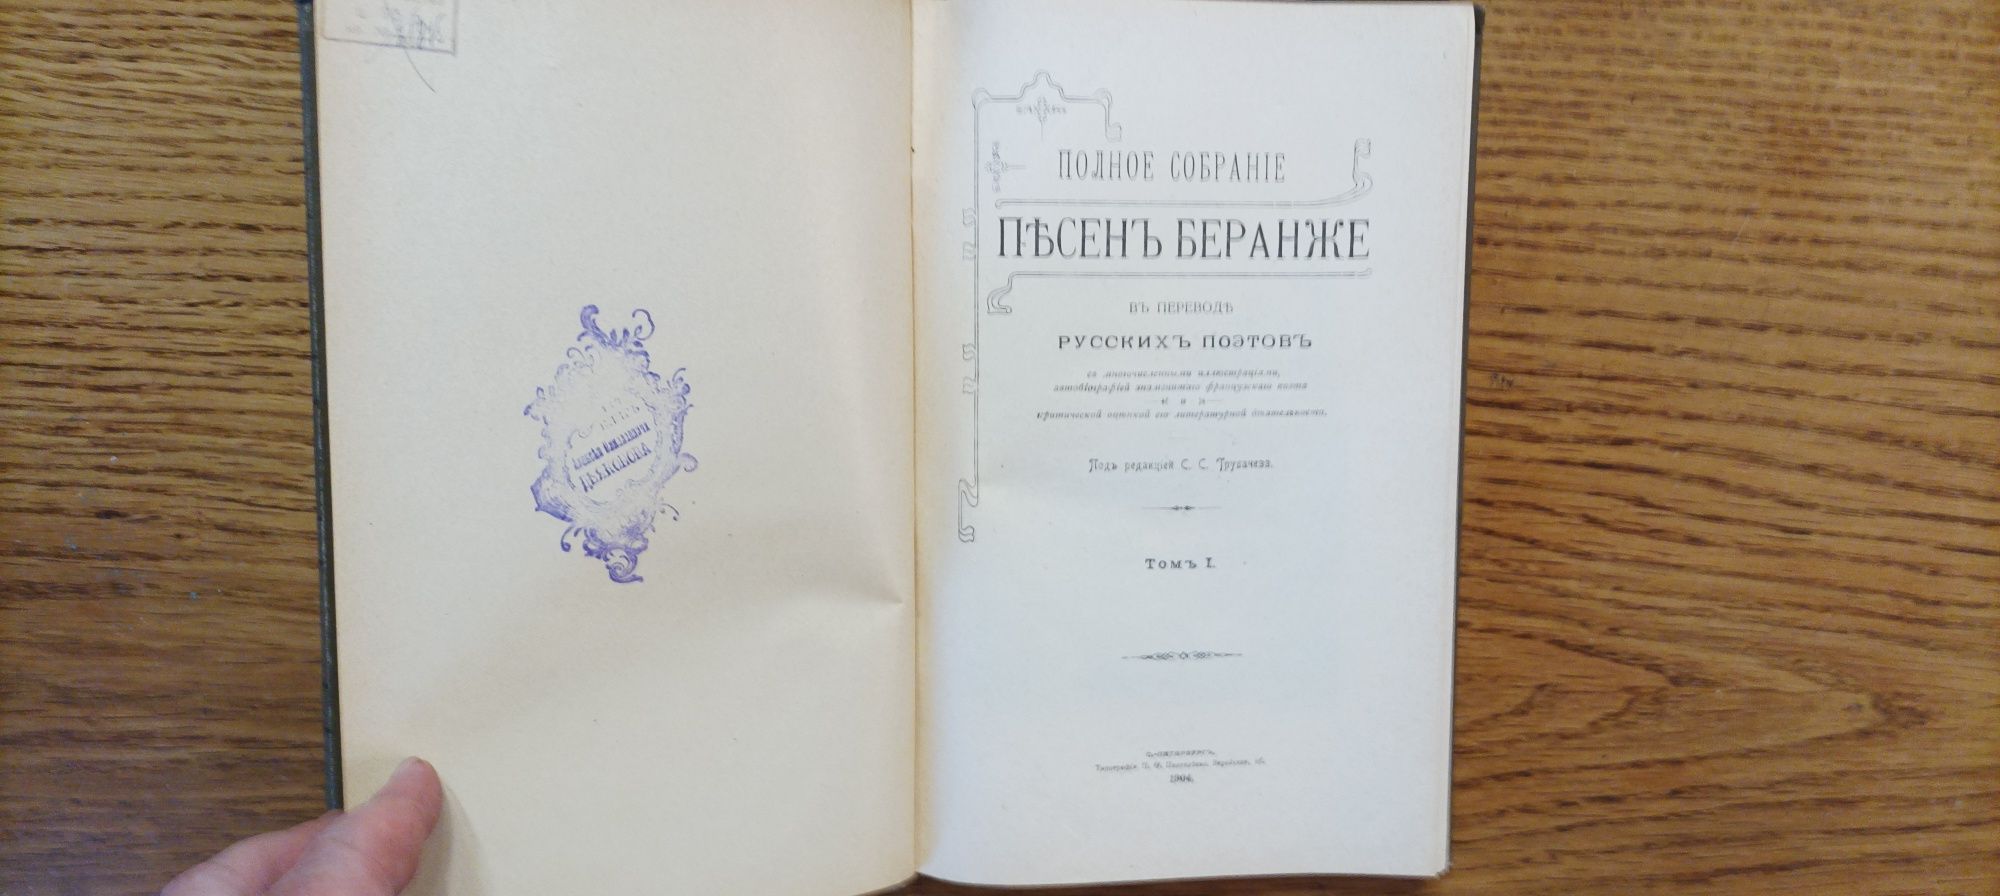 Полное собрание песен Беранже в 4 томах 1904-1905 года